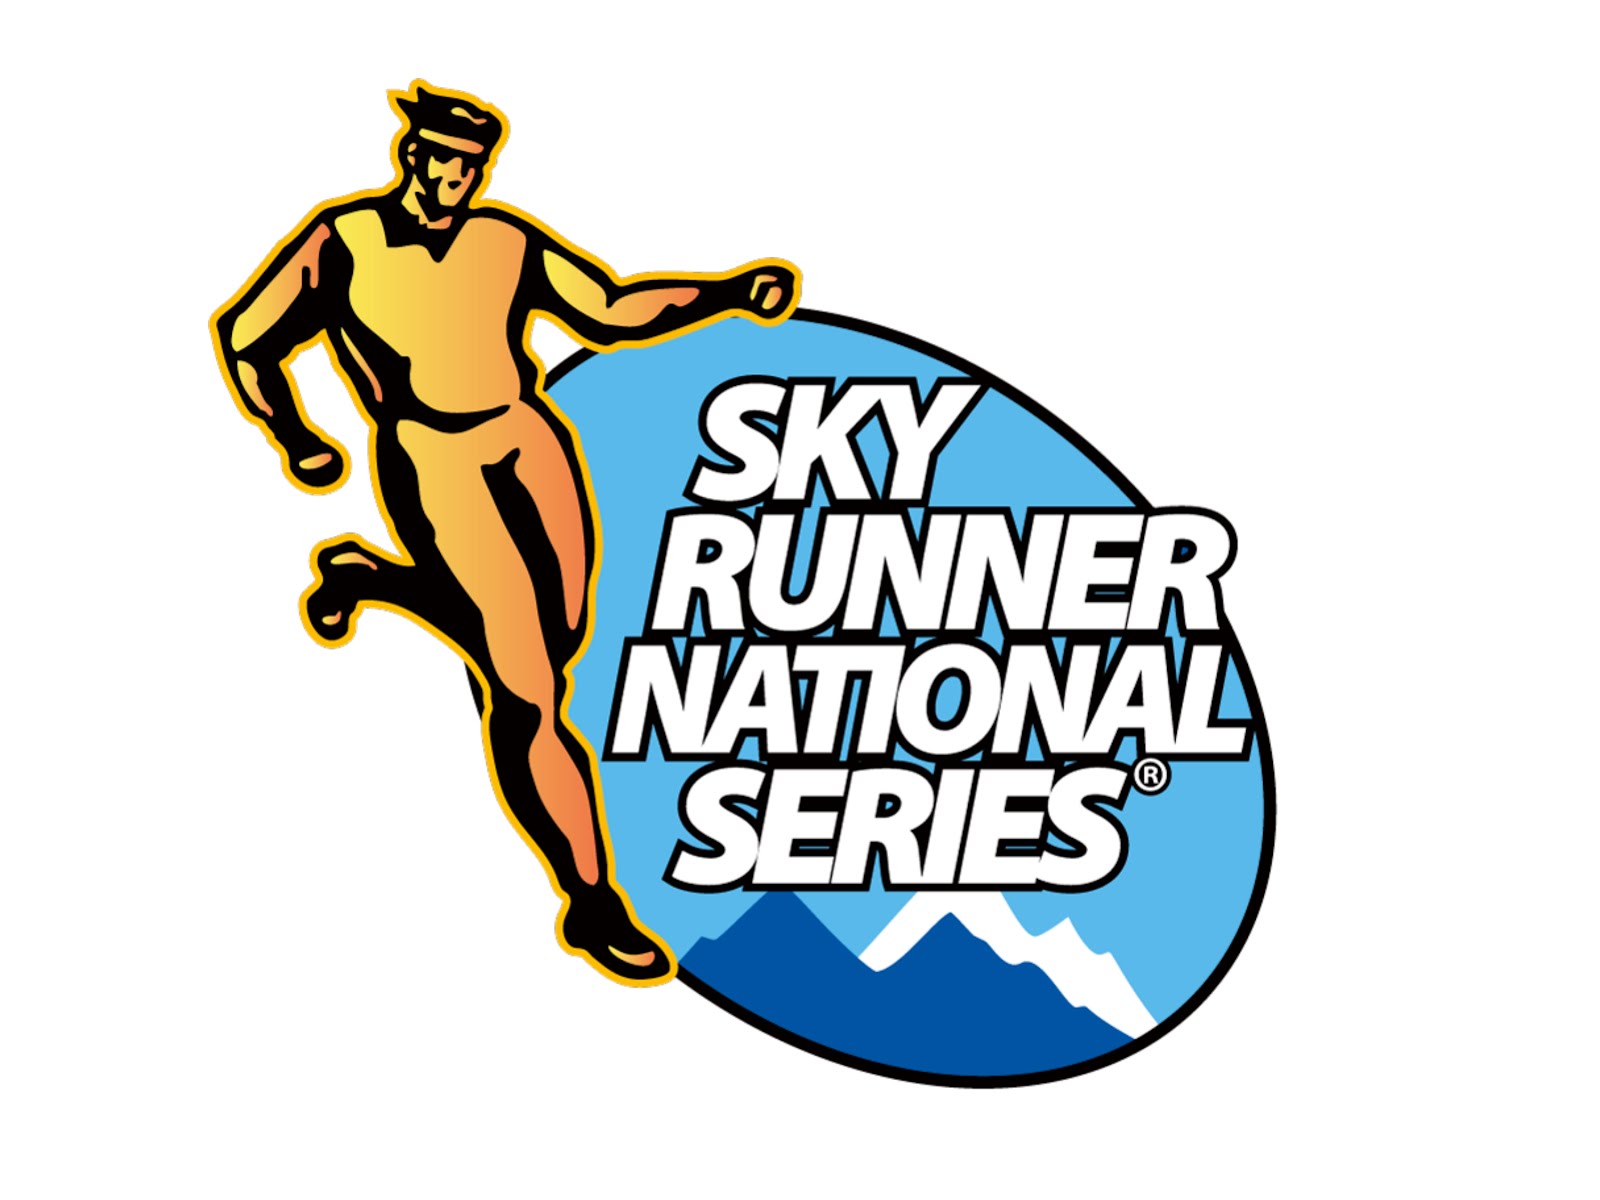 Sky runner series